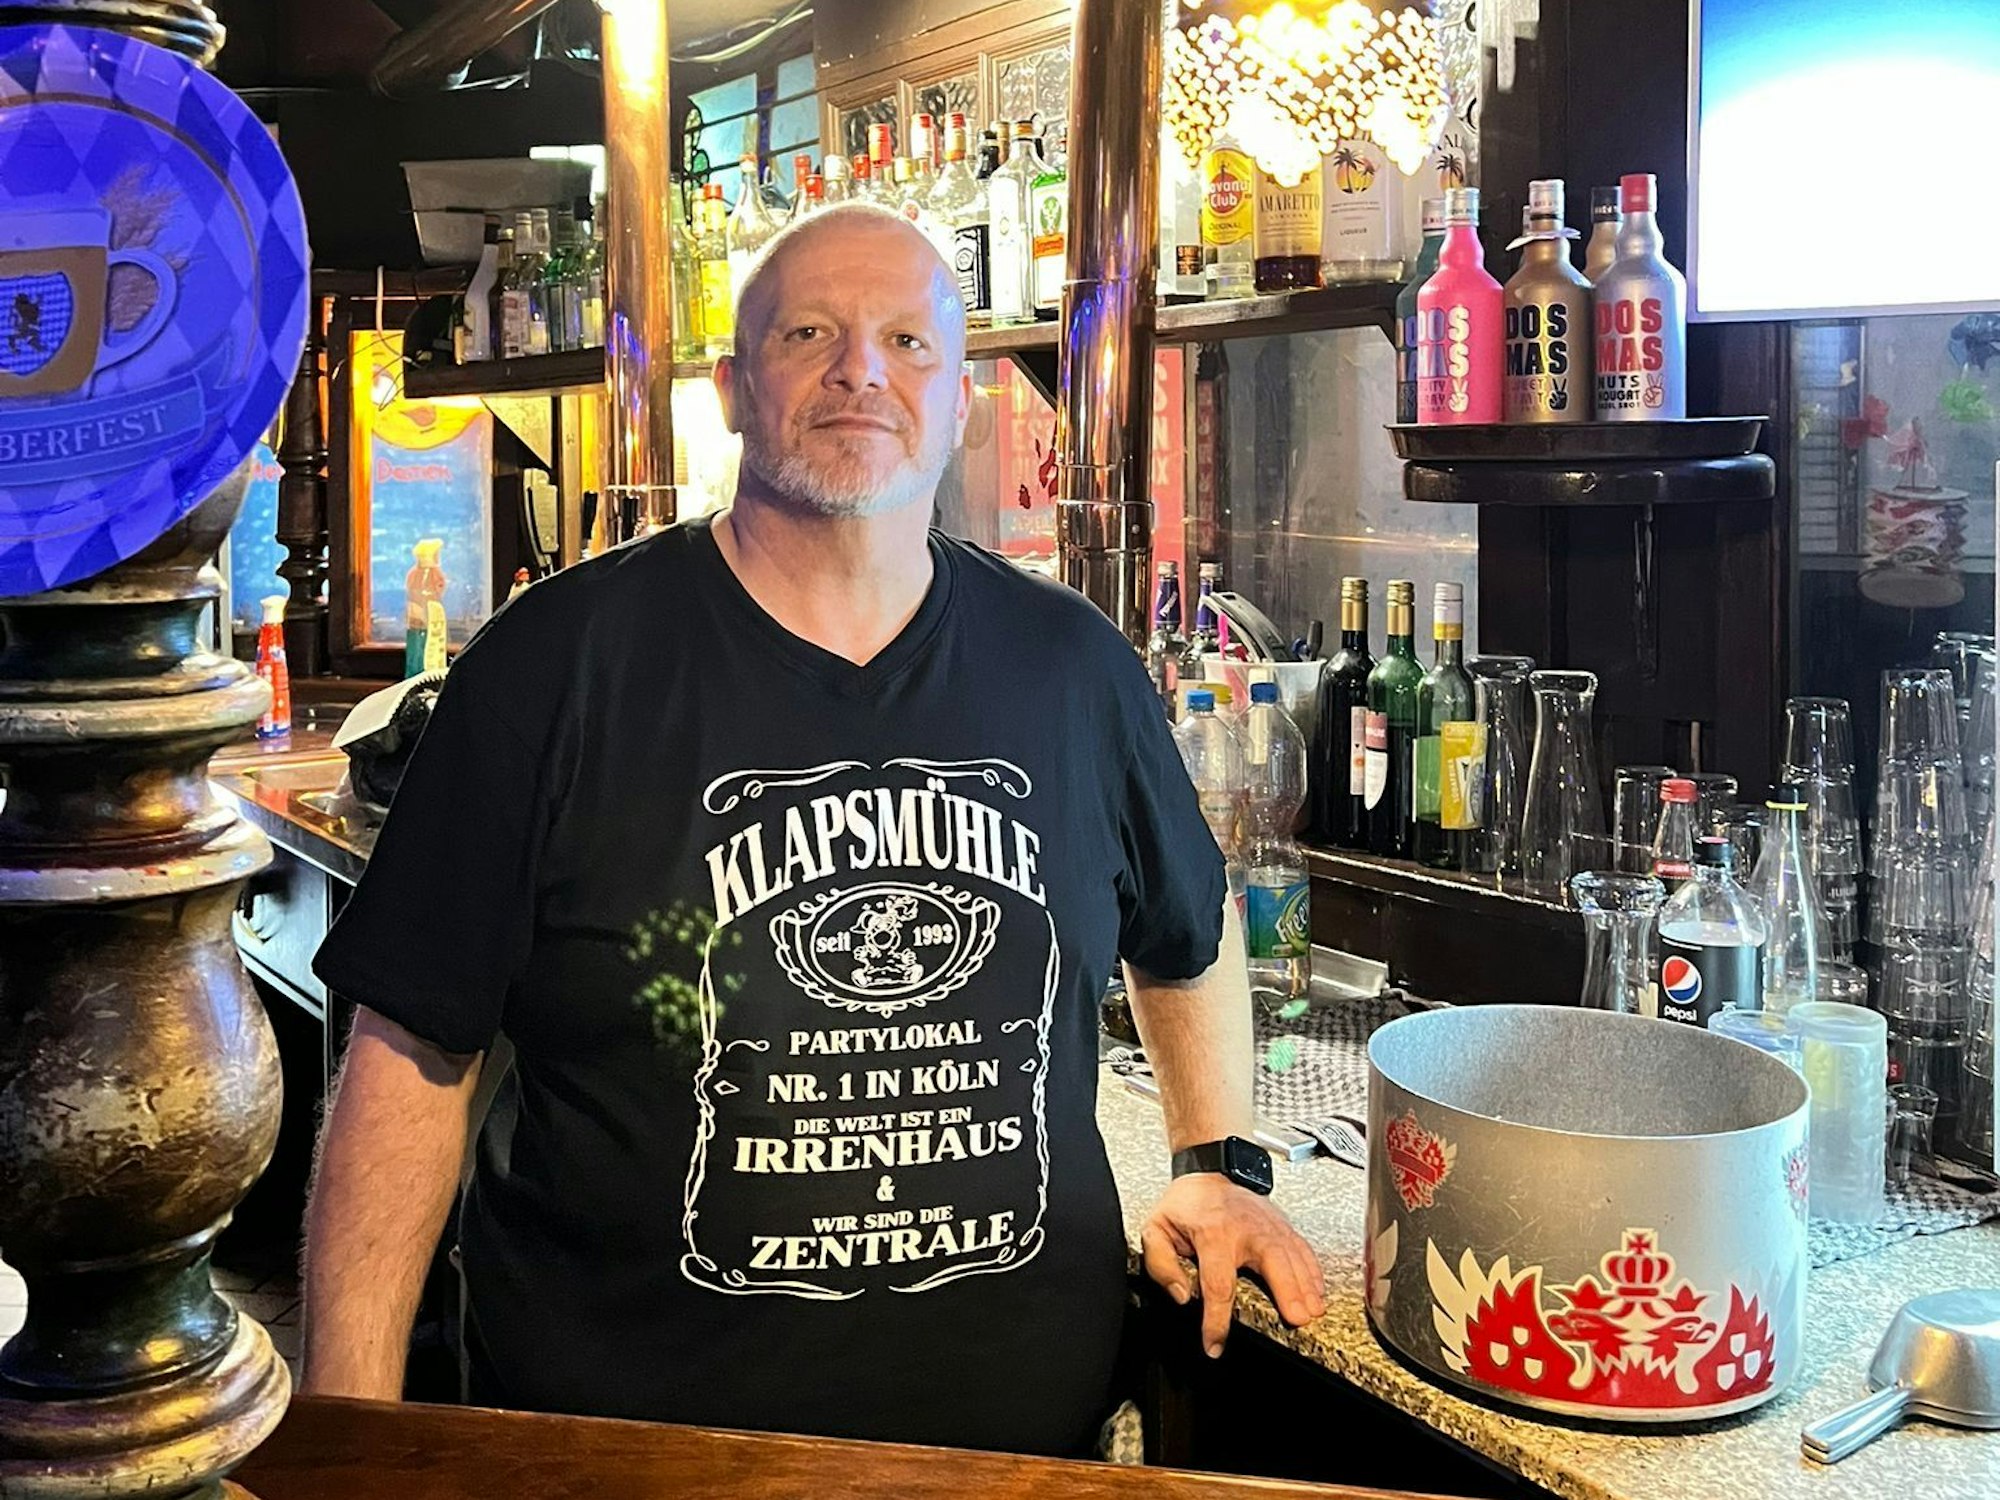 Geschäftsführer Jörg Hohlbein alias „Schorse“ an der Bar des Kölner Kult-Clubs Klapsmühle